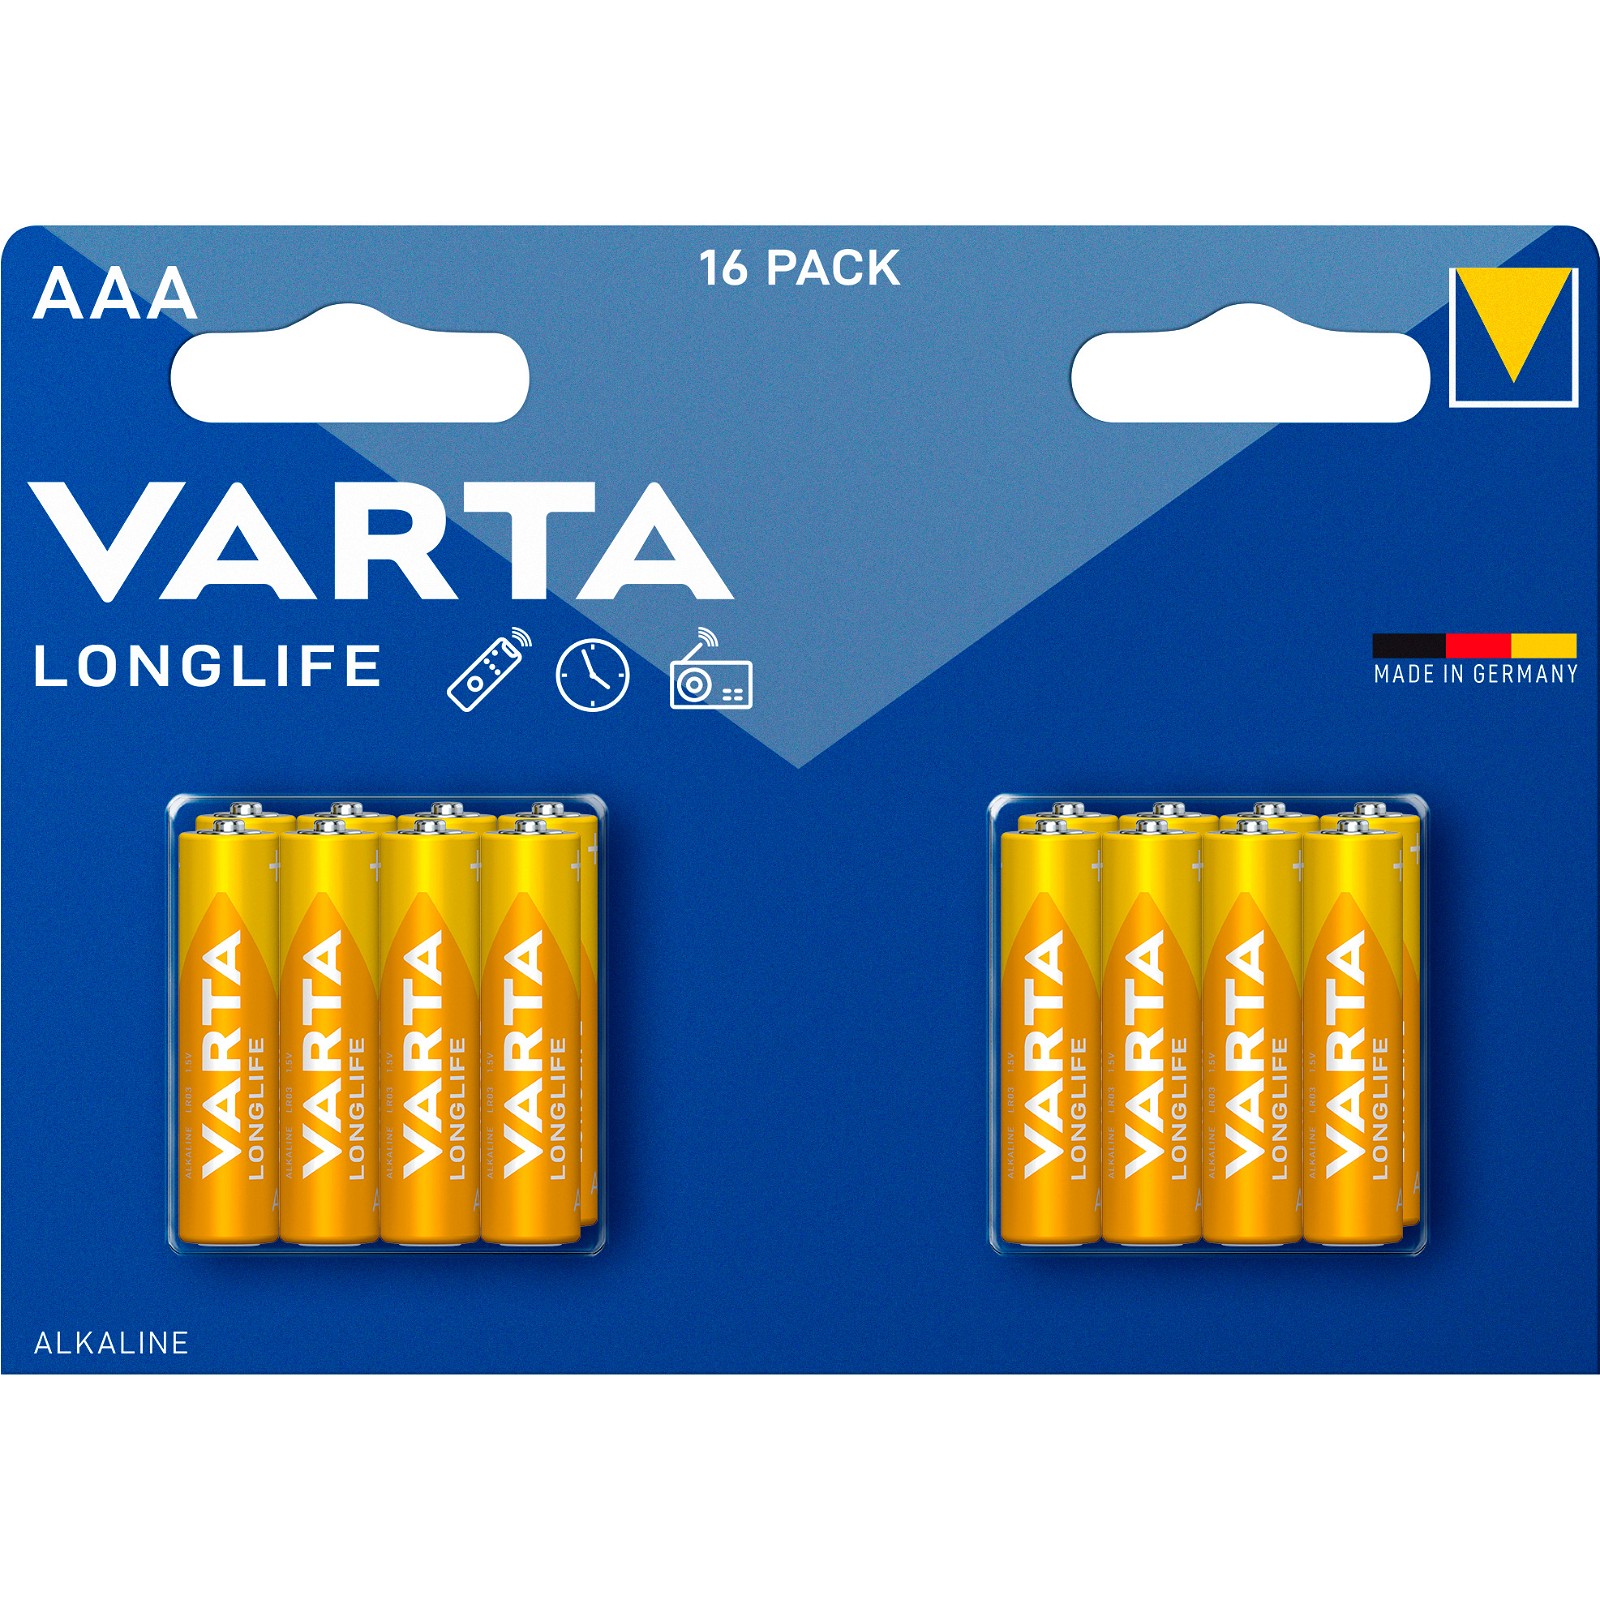 VARTA LONGLIFE AAA-batterier LR03 16 stk